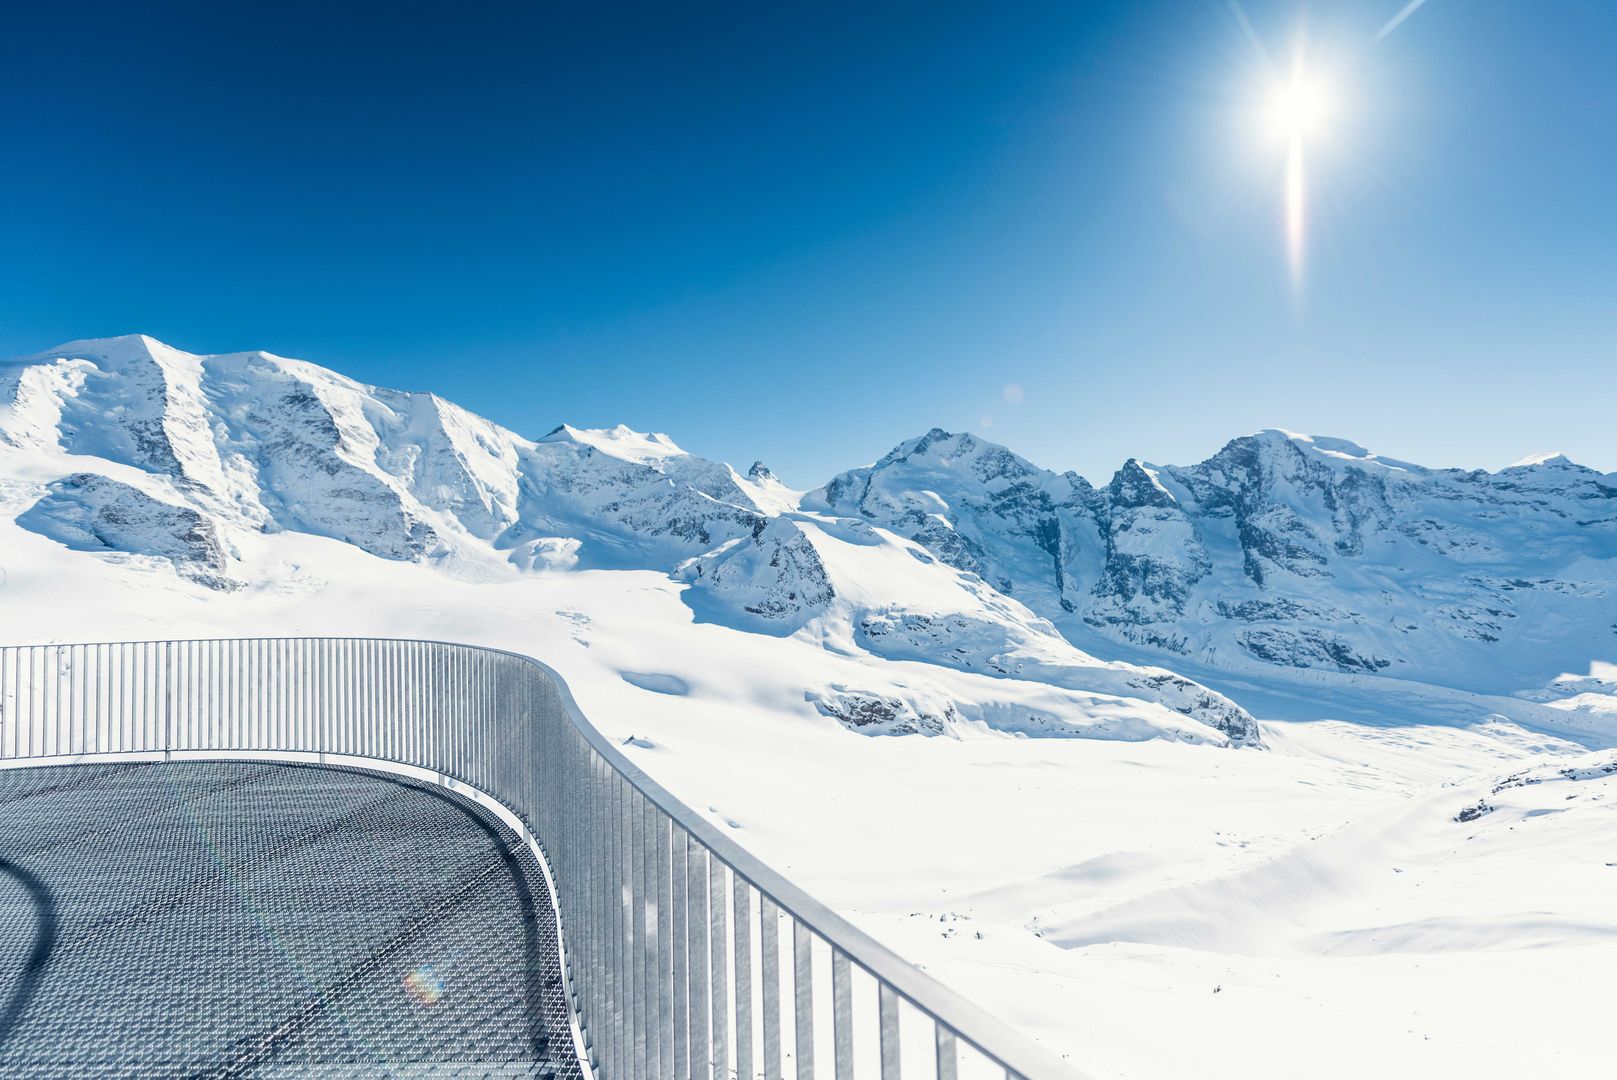 Ein Panoramablick auf schneebedeckte Berge bei strahlendem Sonnenschein mit einem gebogenen Metallzaun im Vordergrund an einem klaren Tag.